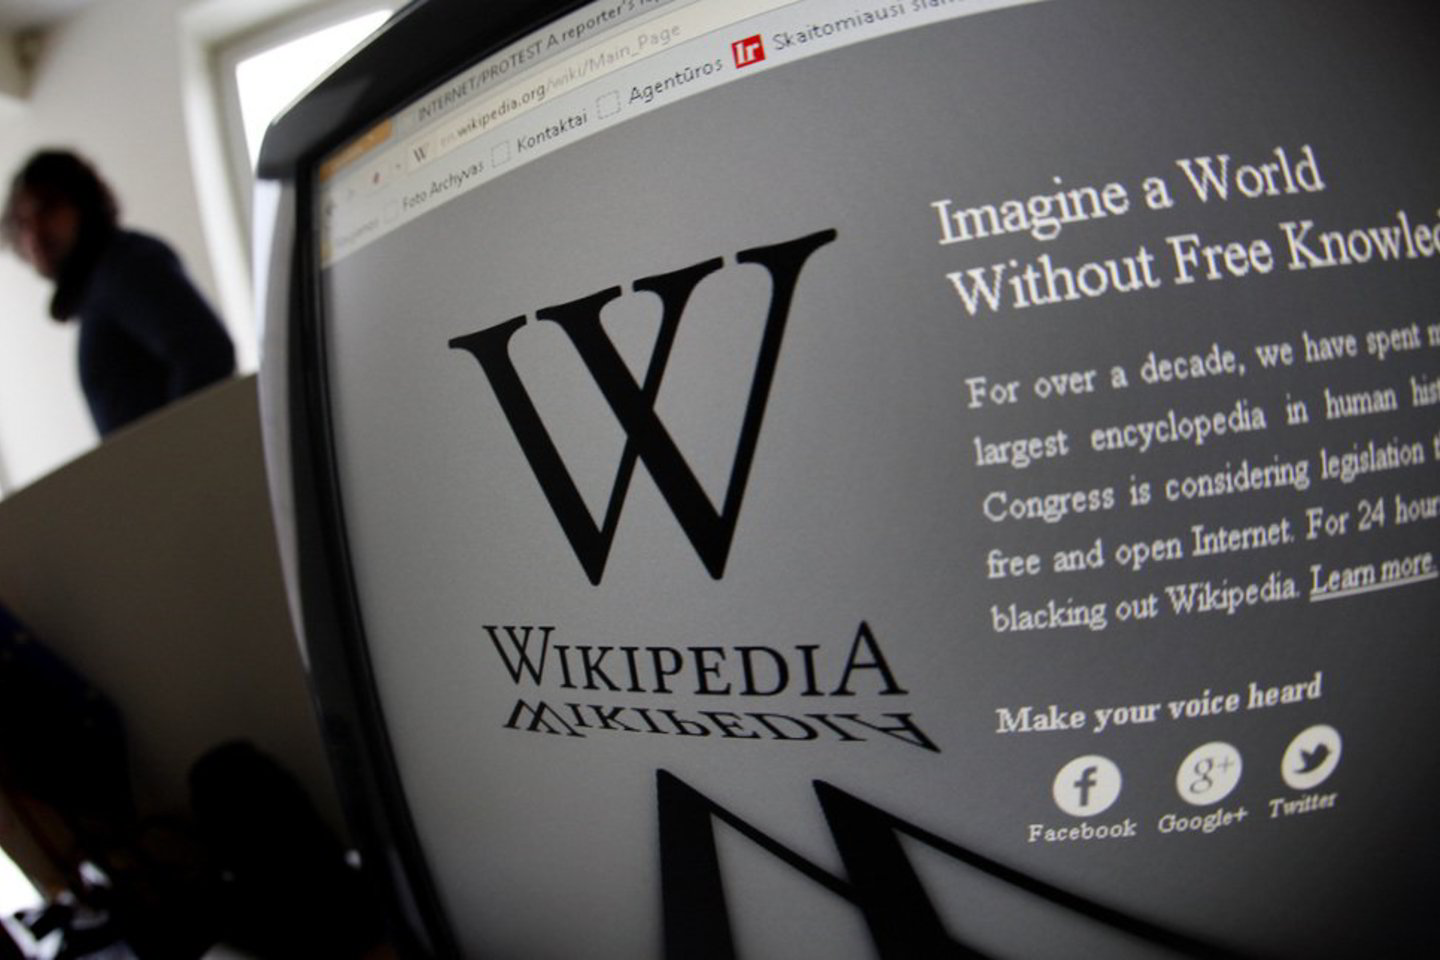 Interneto enciklopedija „Wikipedia“ siekia, kad iki 2015 metų ja naudotųsi milijardas mobiliųjų telefonų vartotojų.<br>V. Balkūnas